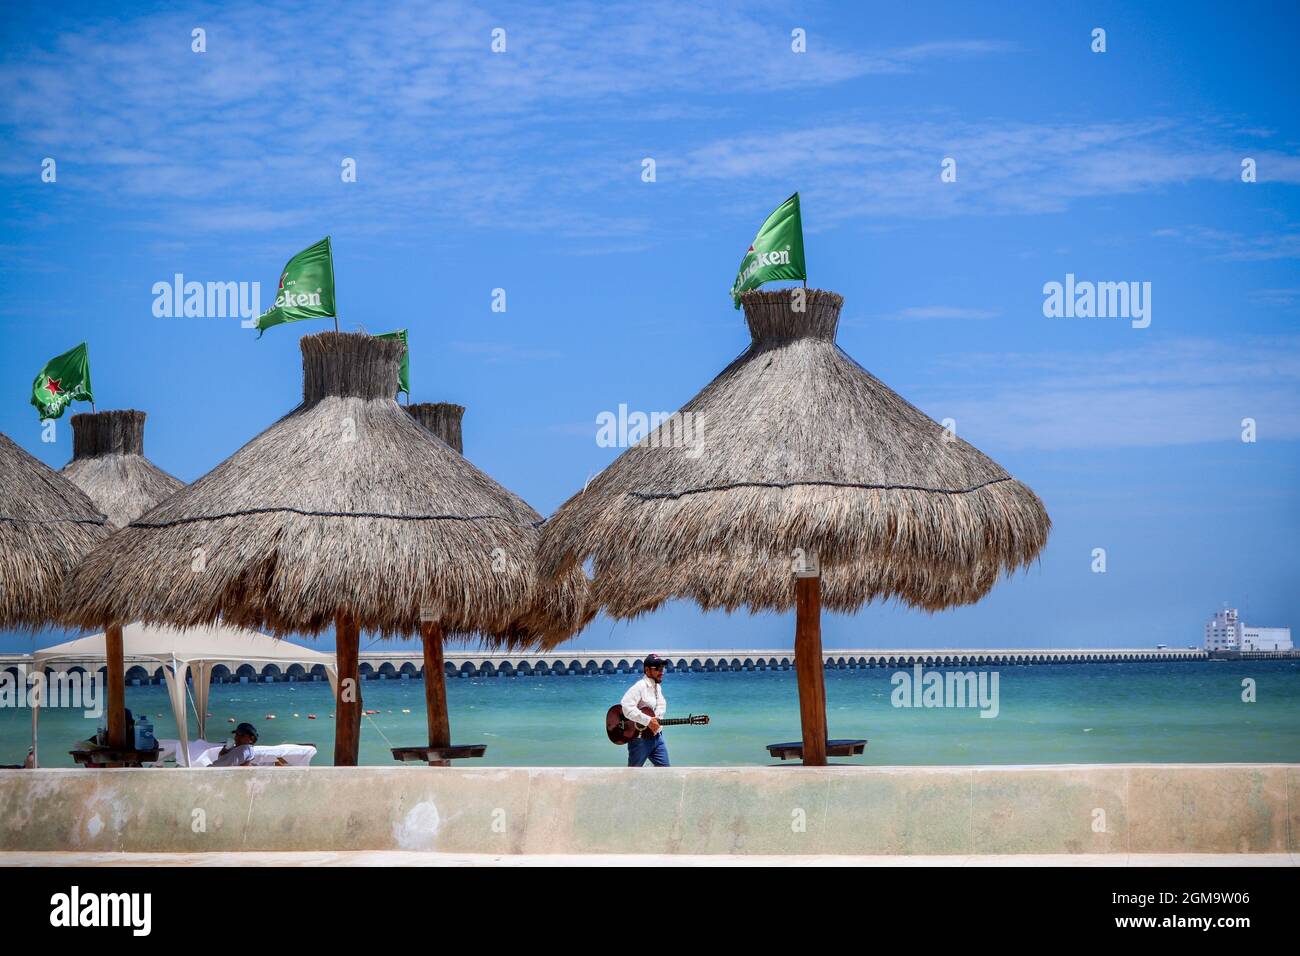 7 06 2017 Progreso Yucatan Mexico längster Pier der Welt in den Golf von Mexiko bei Progreso in Yucatan sah man an Tiki-Schirmen auf dem melac vorbei Stockfoto